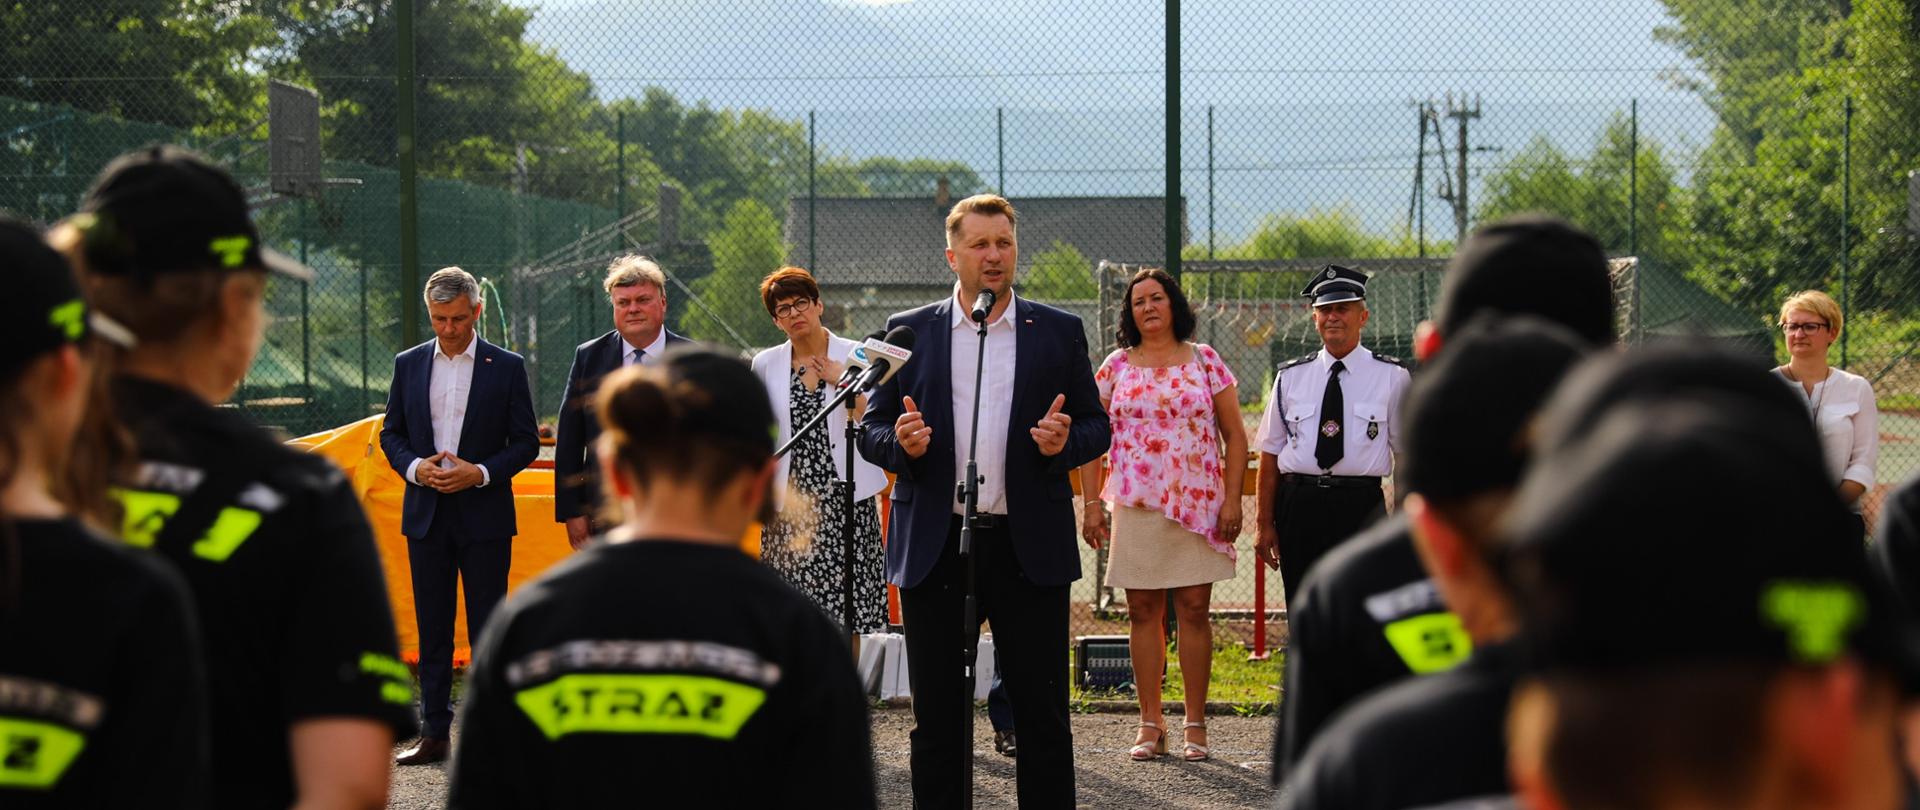 Spotkanie ministra Przemysława Czarnka z przedstawicielami Młodzieżowych Drużyn Pożarniczych na obozie w Porąbce